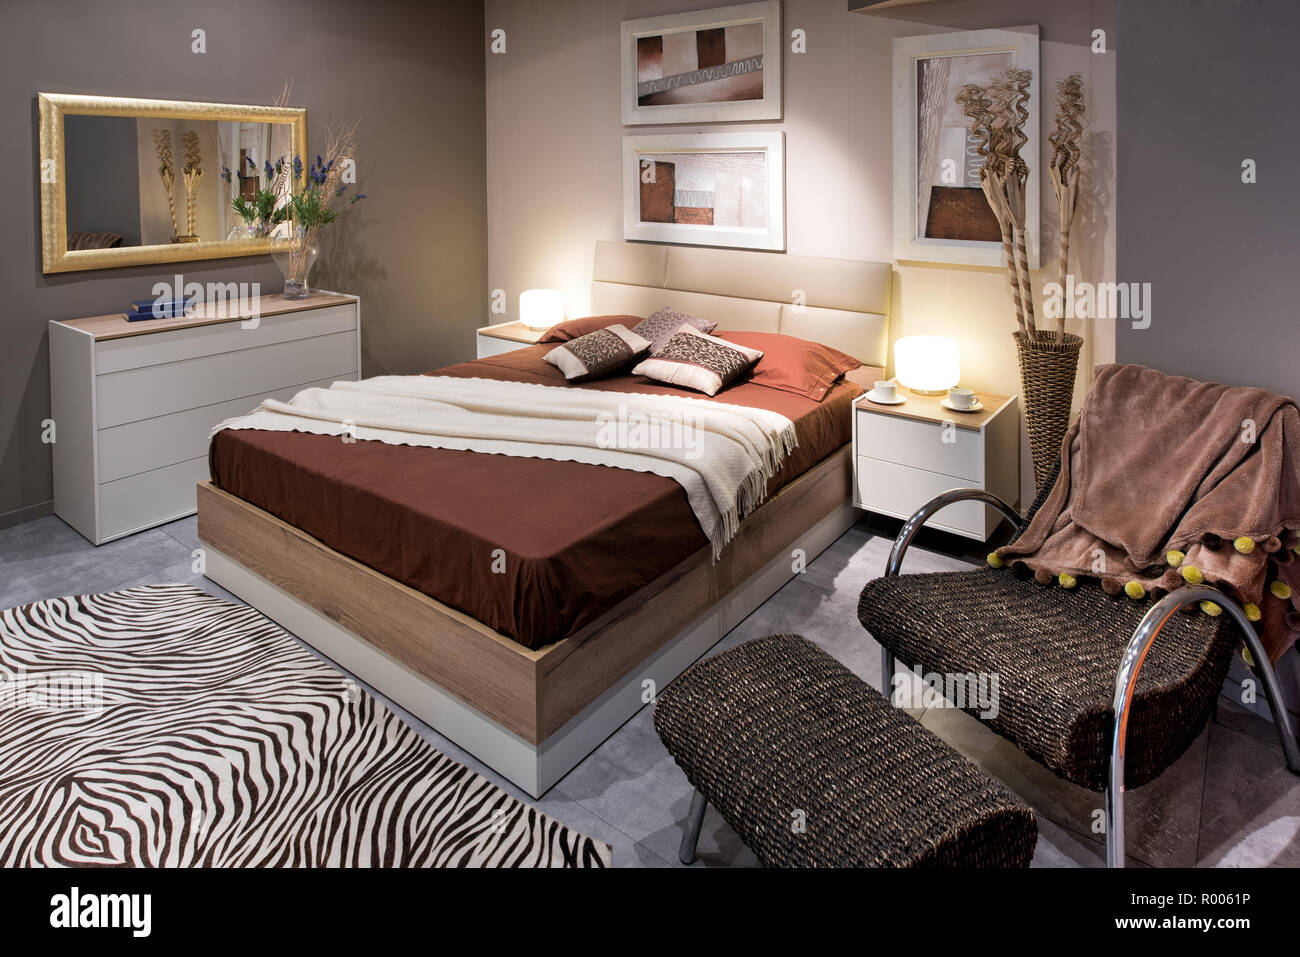 Schlafzimmer mit Doppelbett Gestaltung mit hohen braunen Bett und komfortable Sessel mit Ottomane, zebra Teppich auf dem Boden und Gemälden an den Wänden Stockfoto